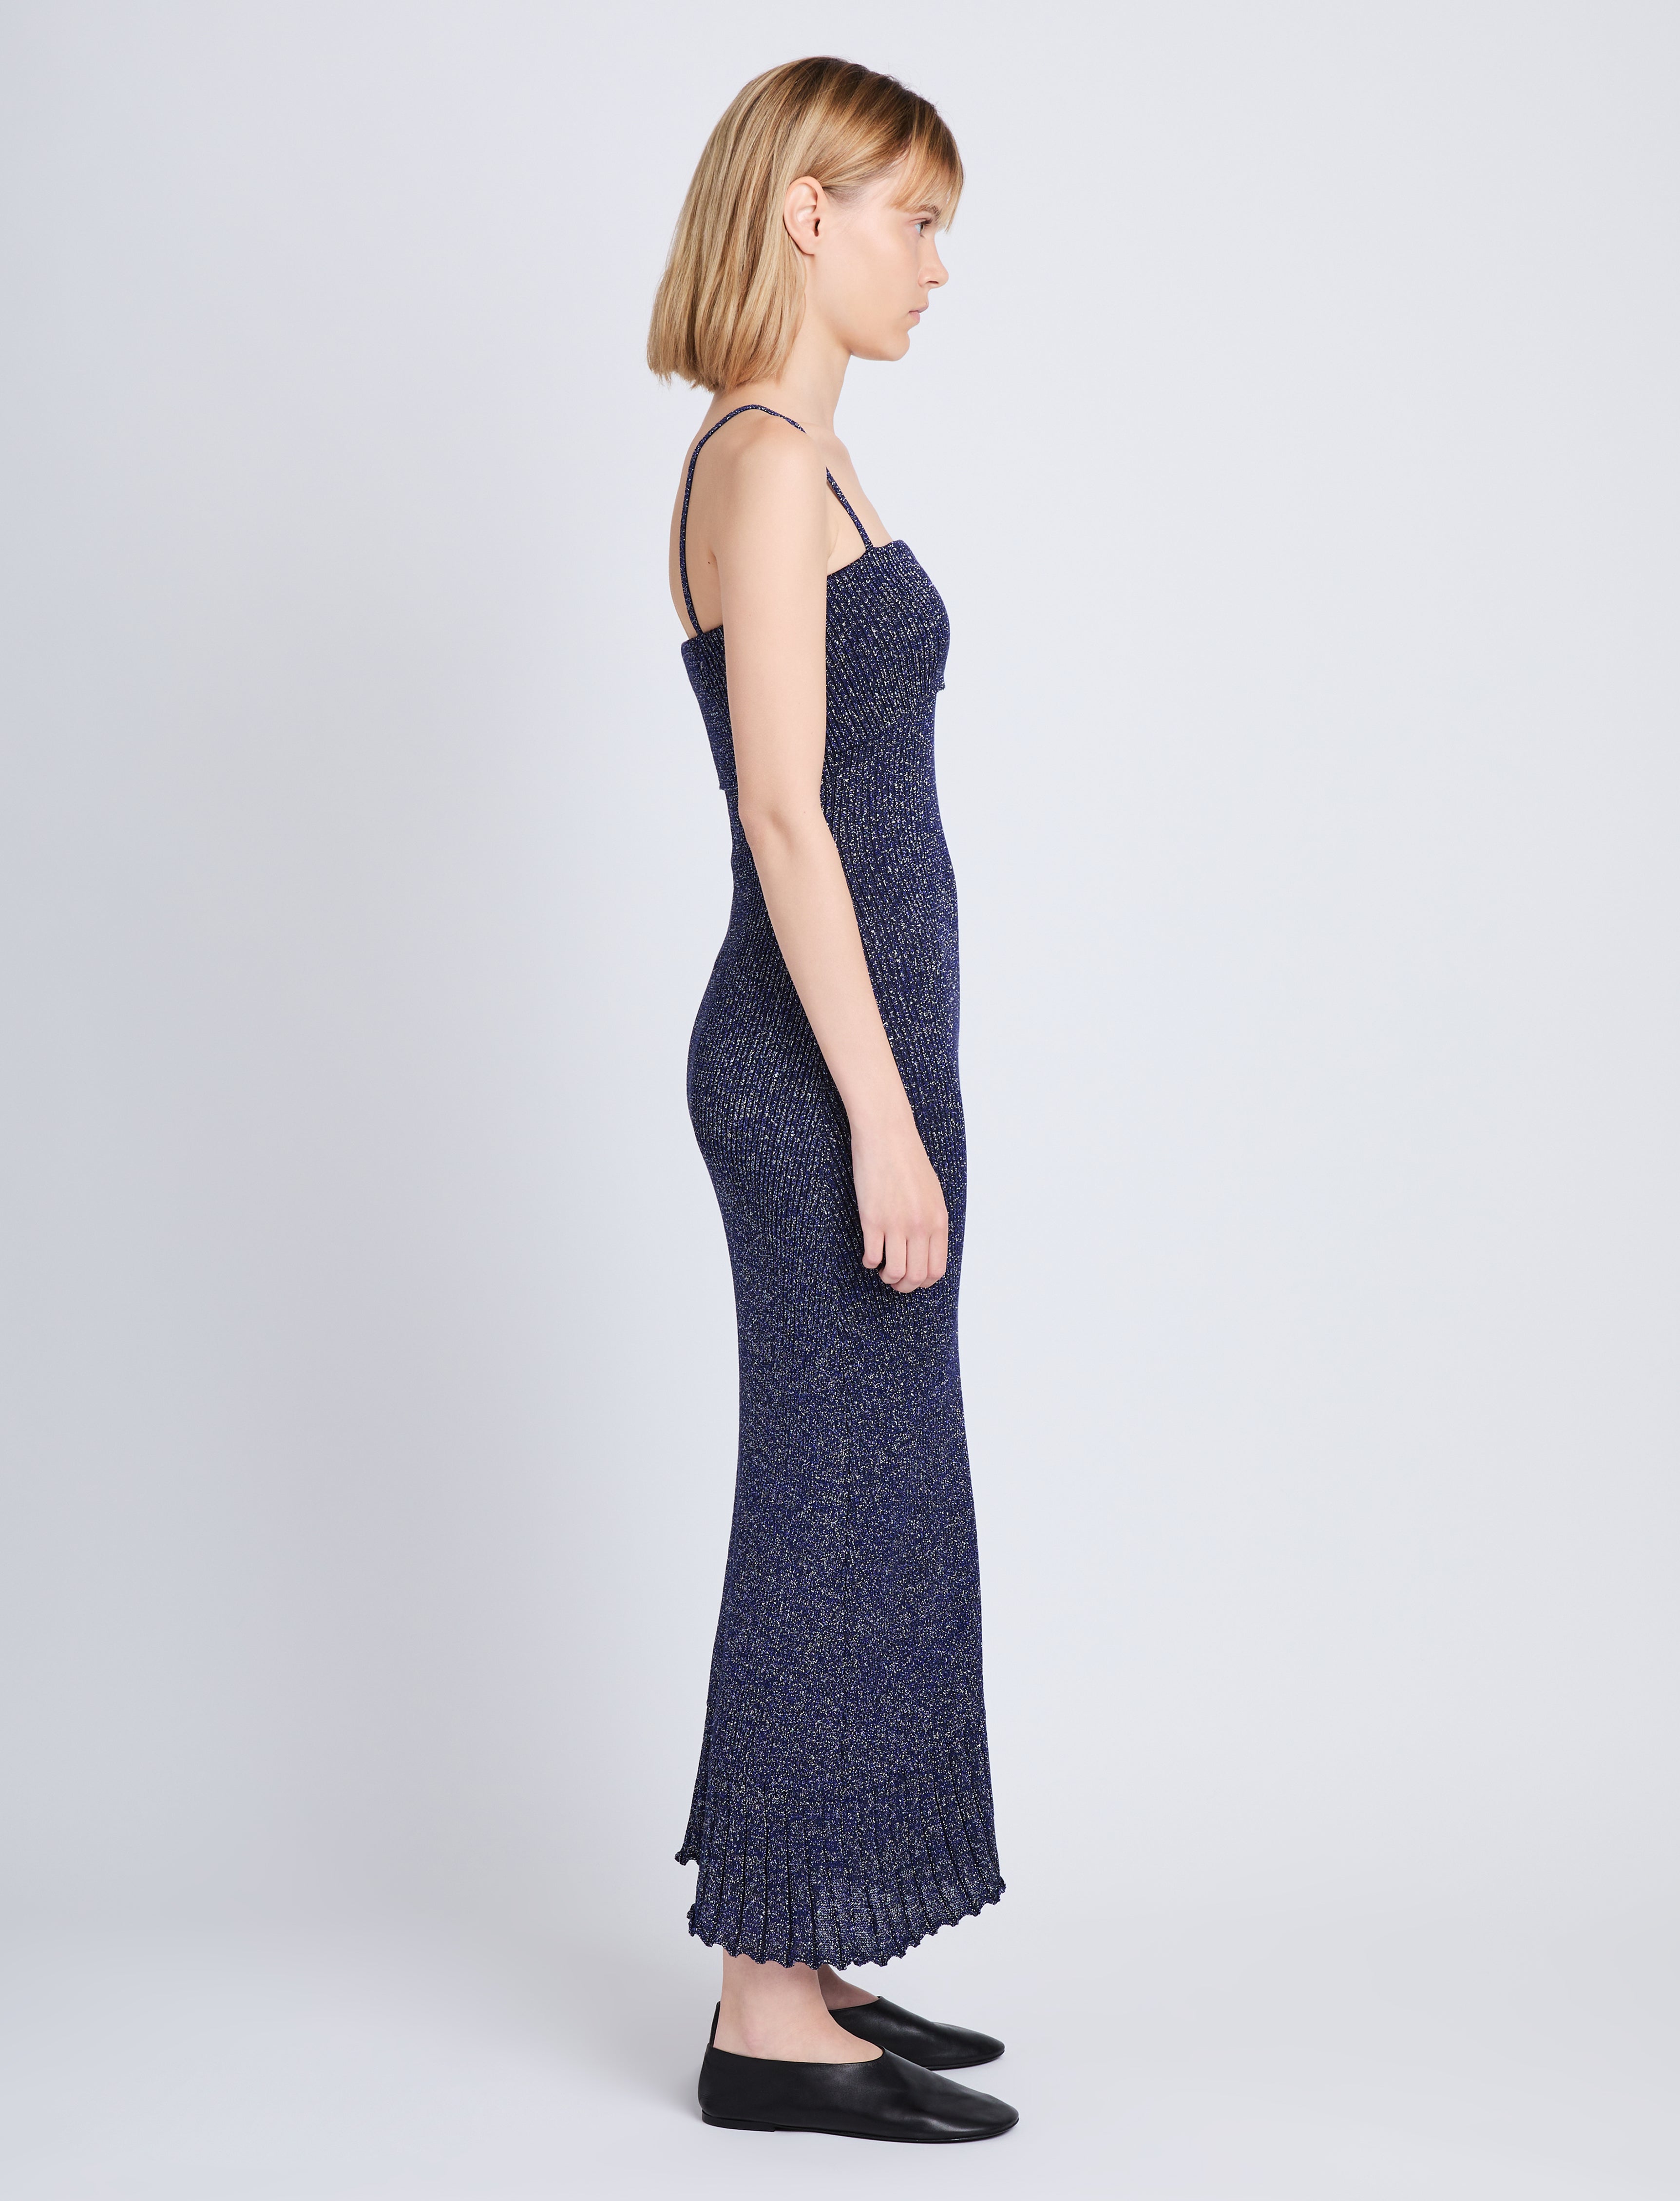 Lorenia Knit Dress in Marled Lurex – Proenza Schouler